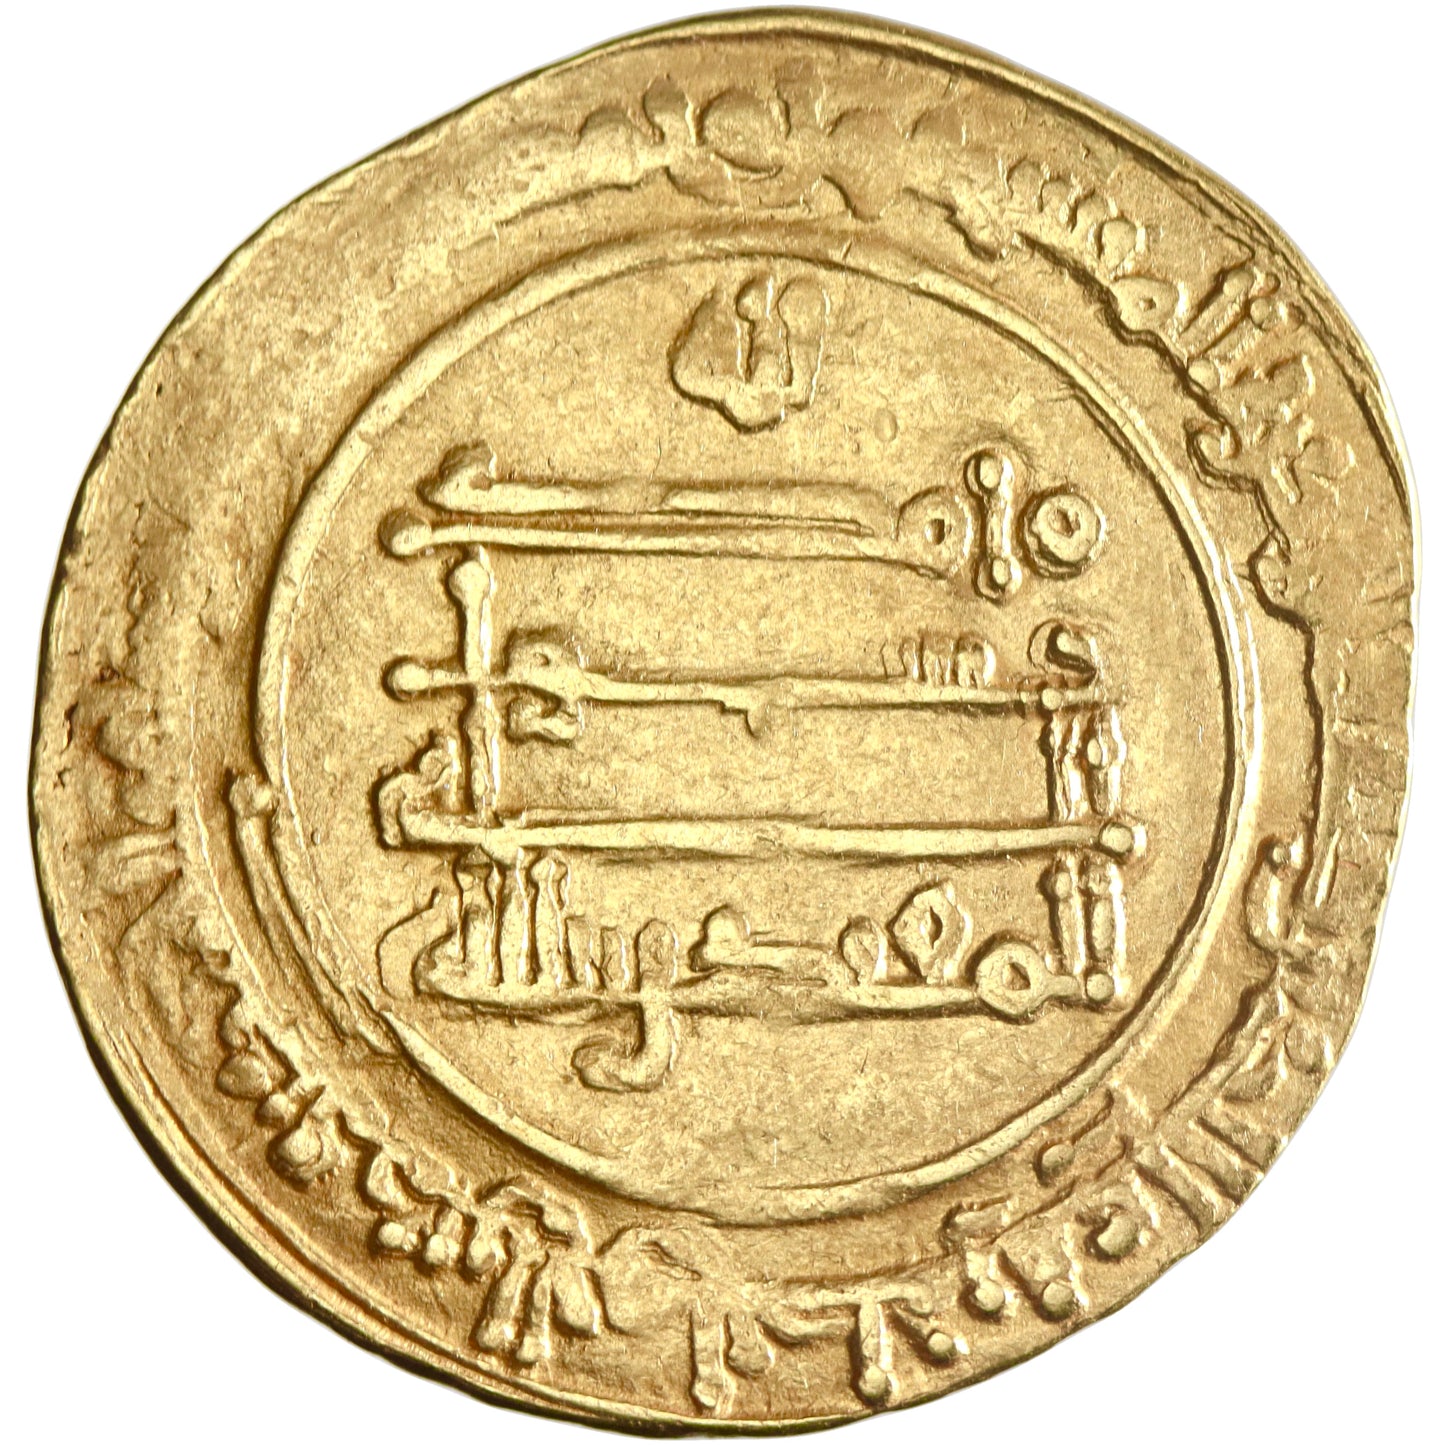 Abbasid, al-Muqtadir, gold dinar, al-Ahwaz mint, AH 316, citing Abu al-'Abbas